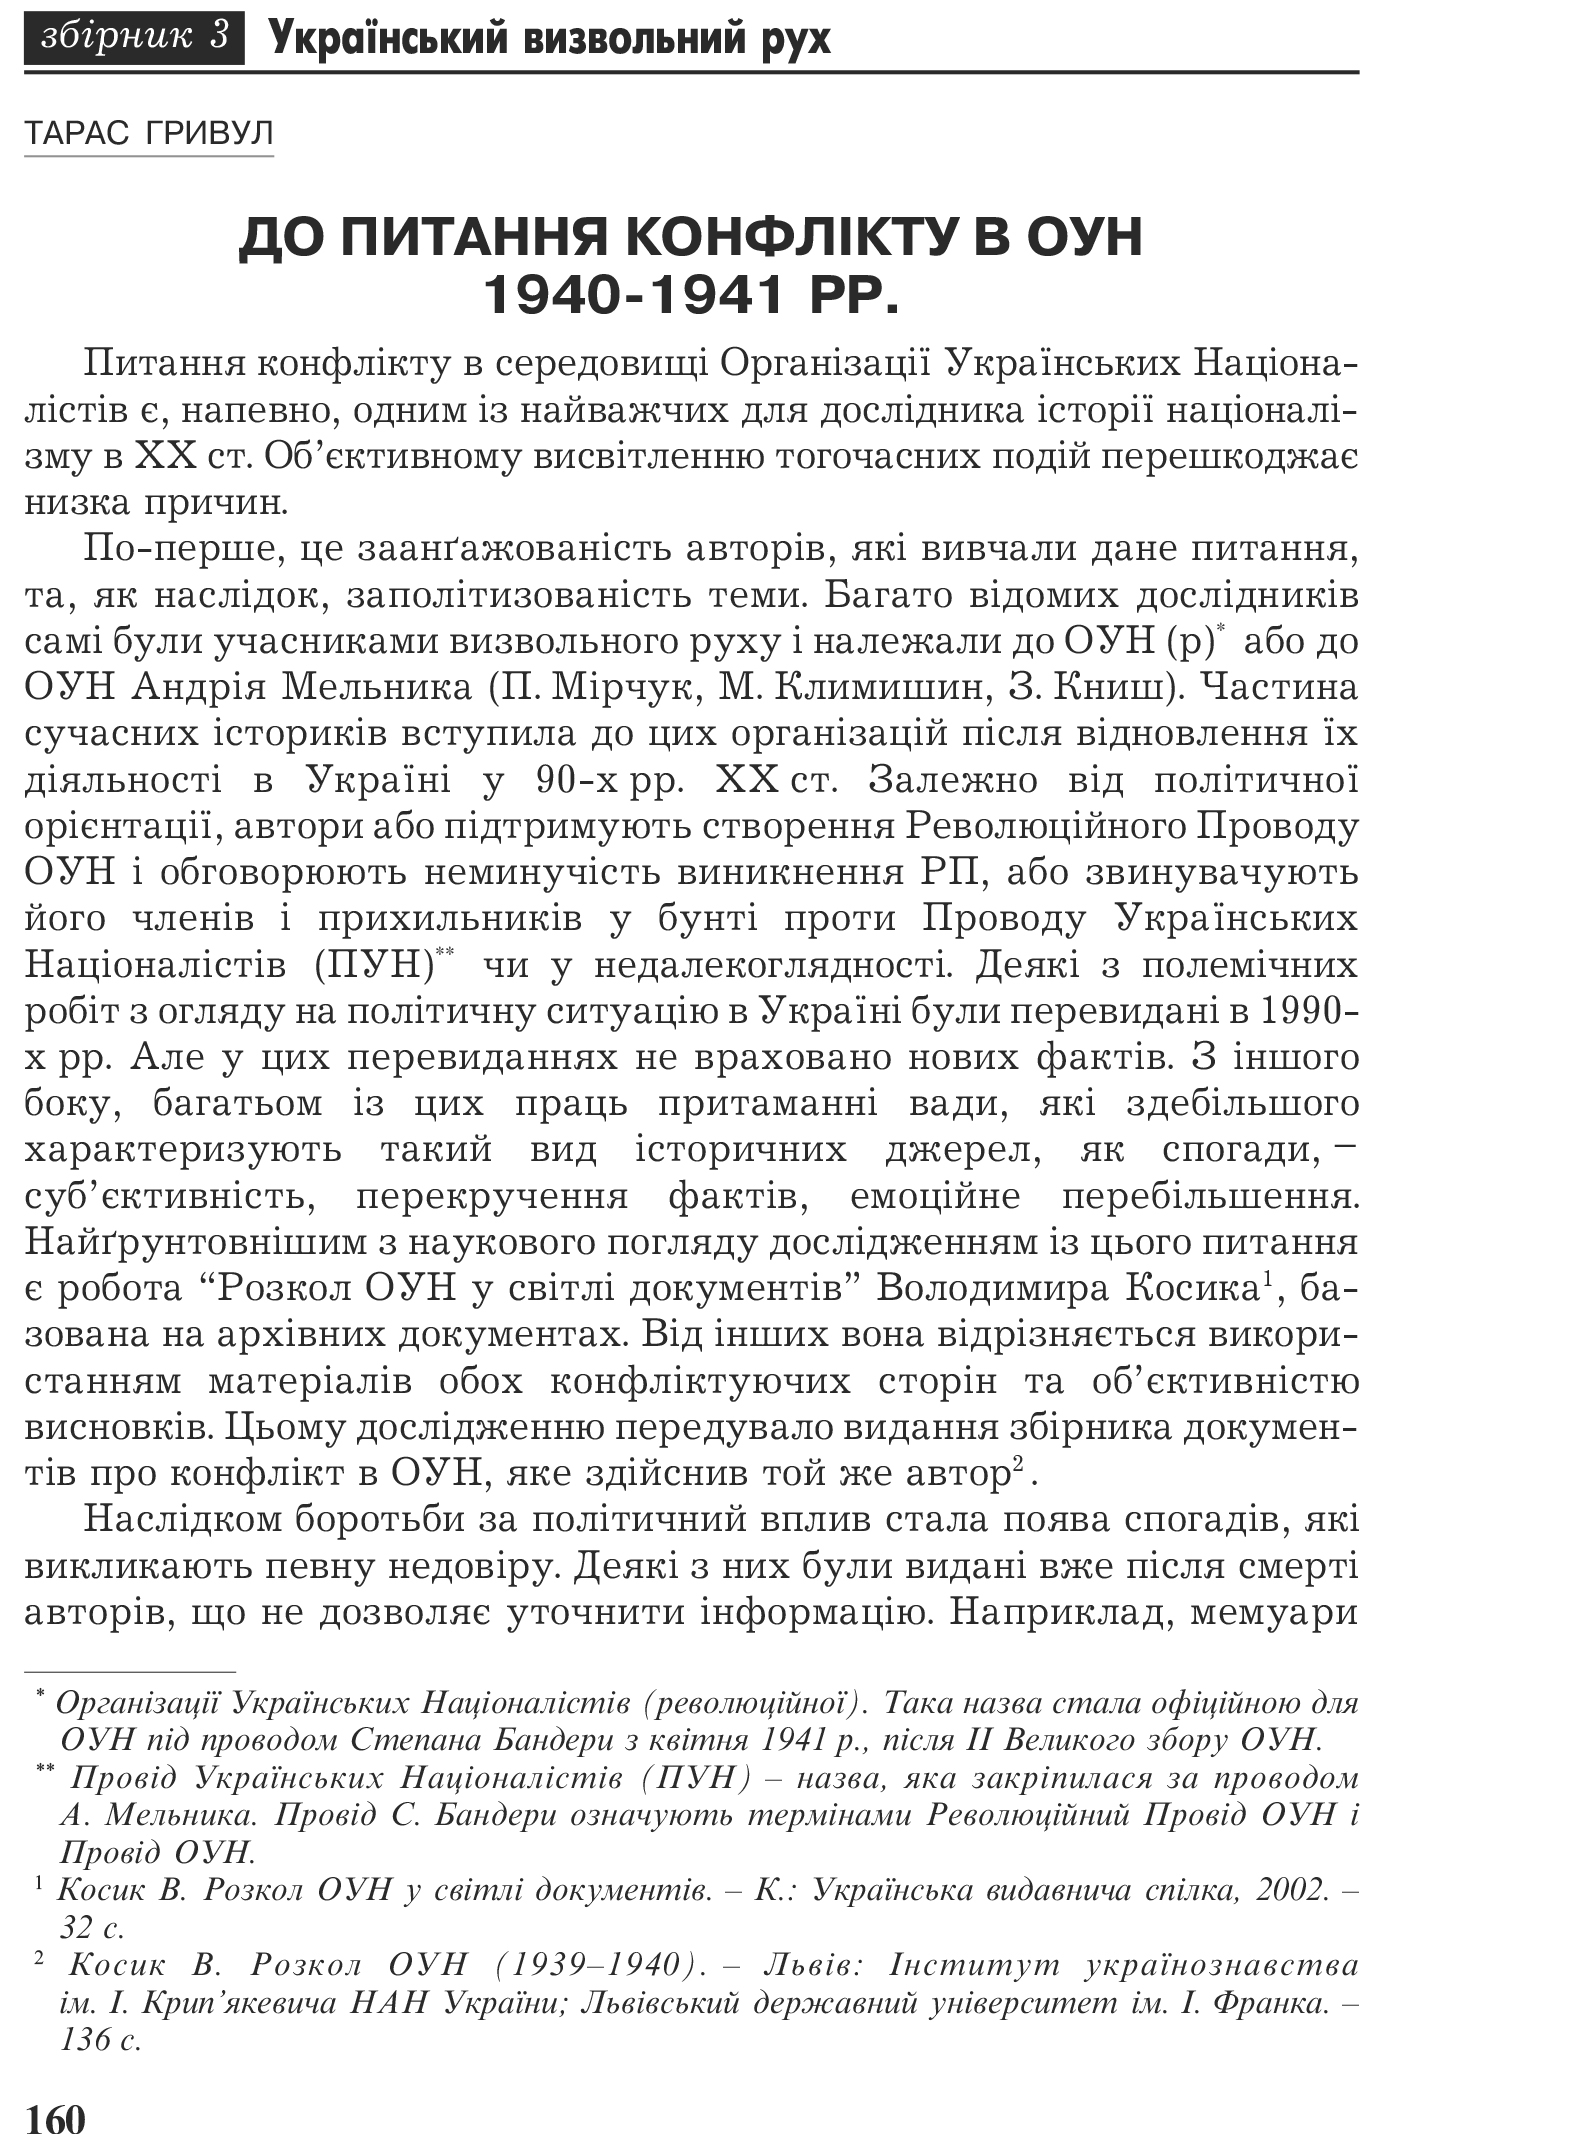 Український визвольний рух №3, ст. 160 - 171